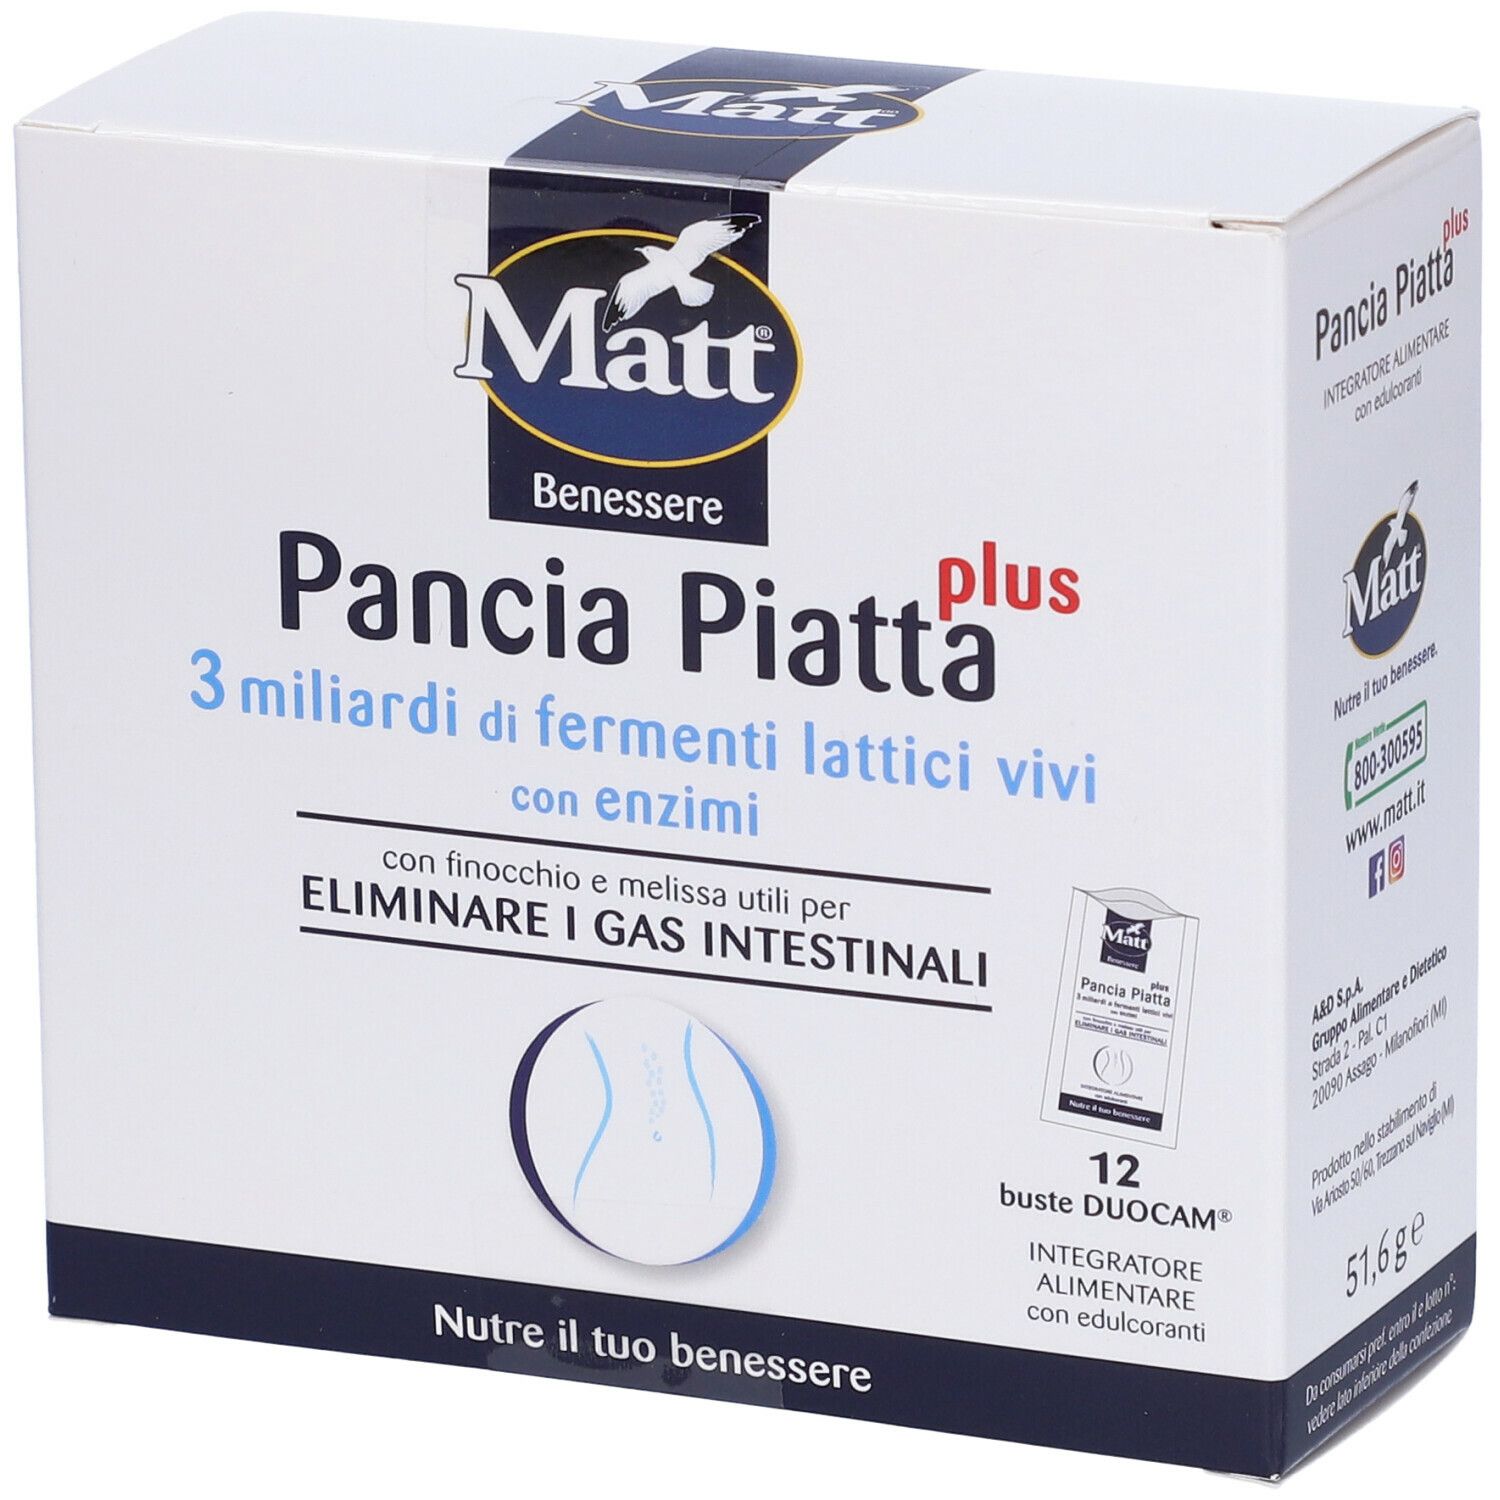 Image of MATT Benessere Pancia Piatta Plus Integratore Alimentare